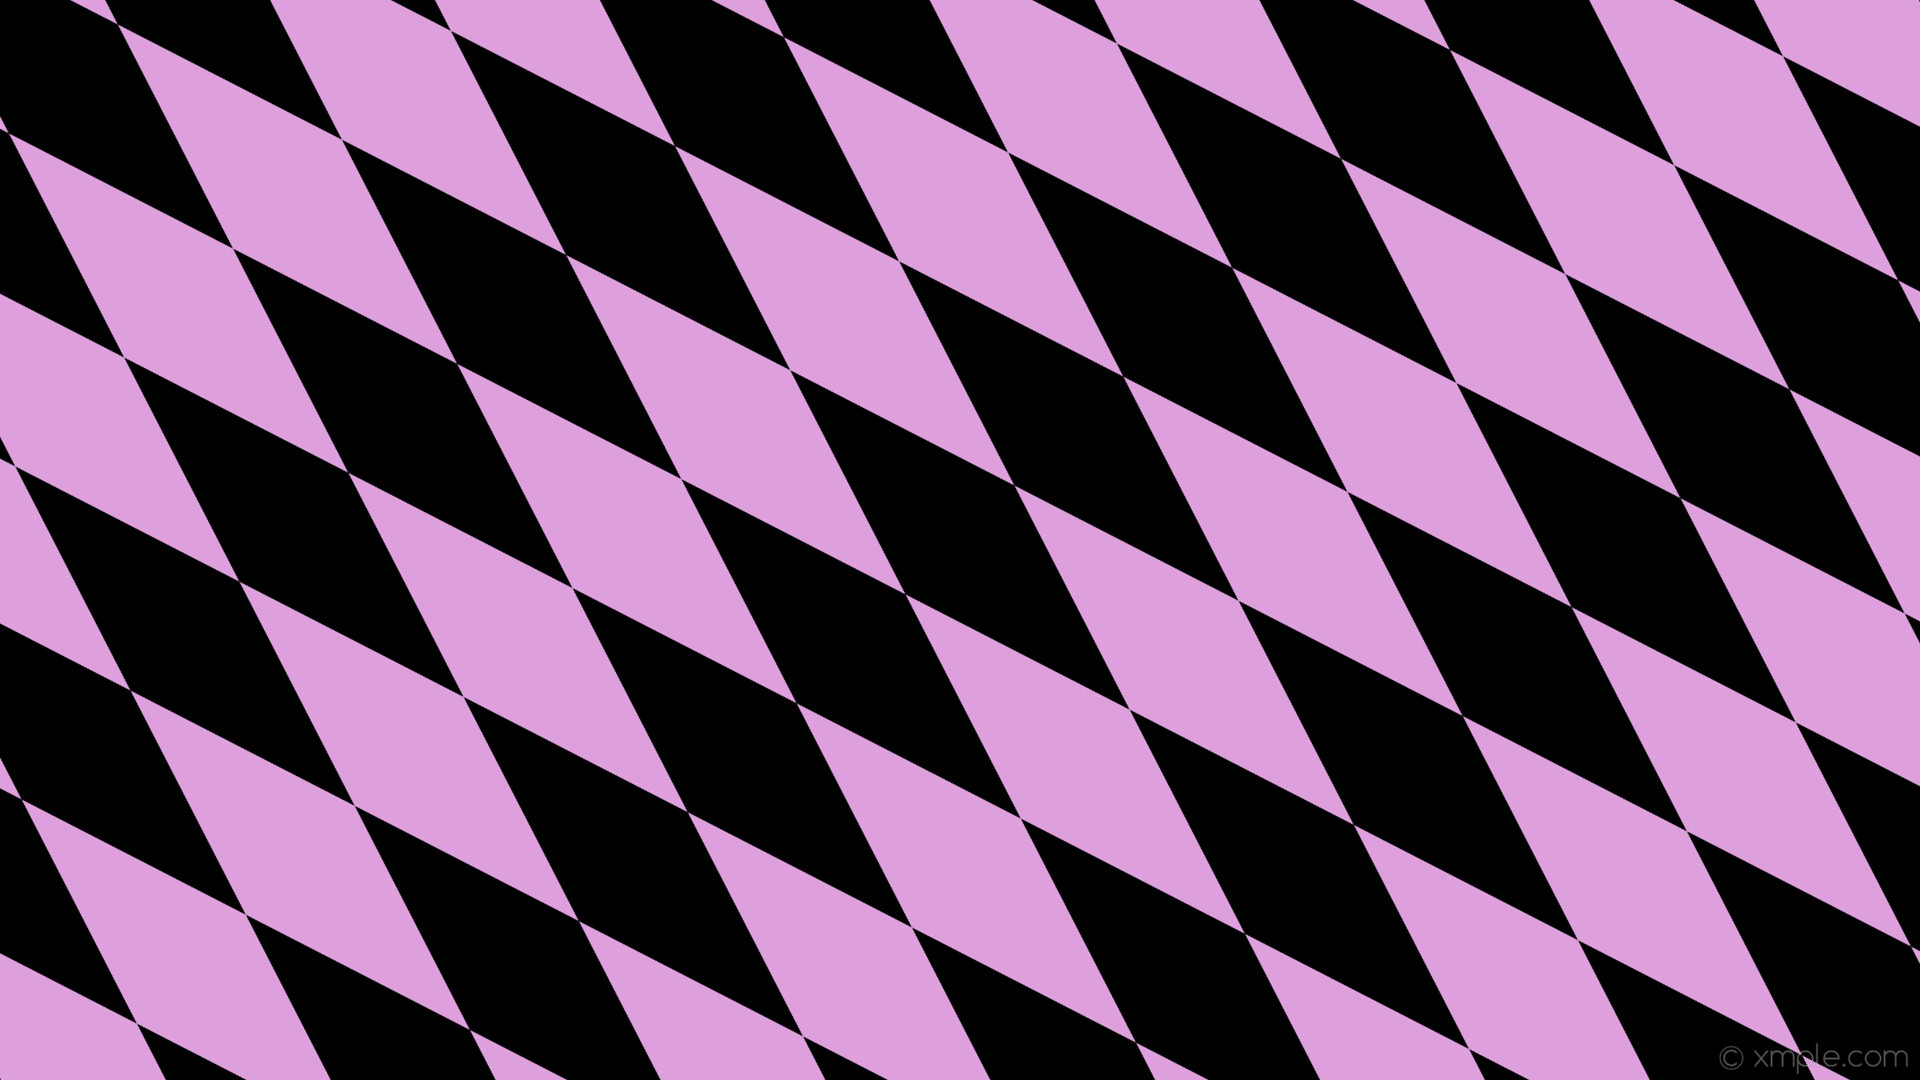 1920x1080 wallpaper lozenge black rhombus purple diamond plum #000000 #dda0dd 135Â°  480px 154px